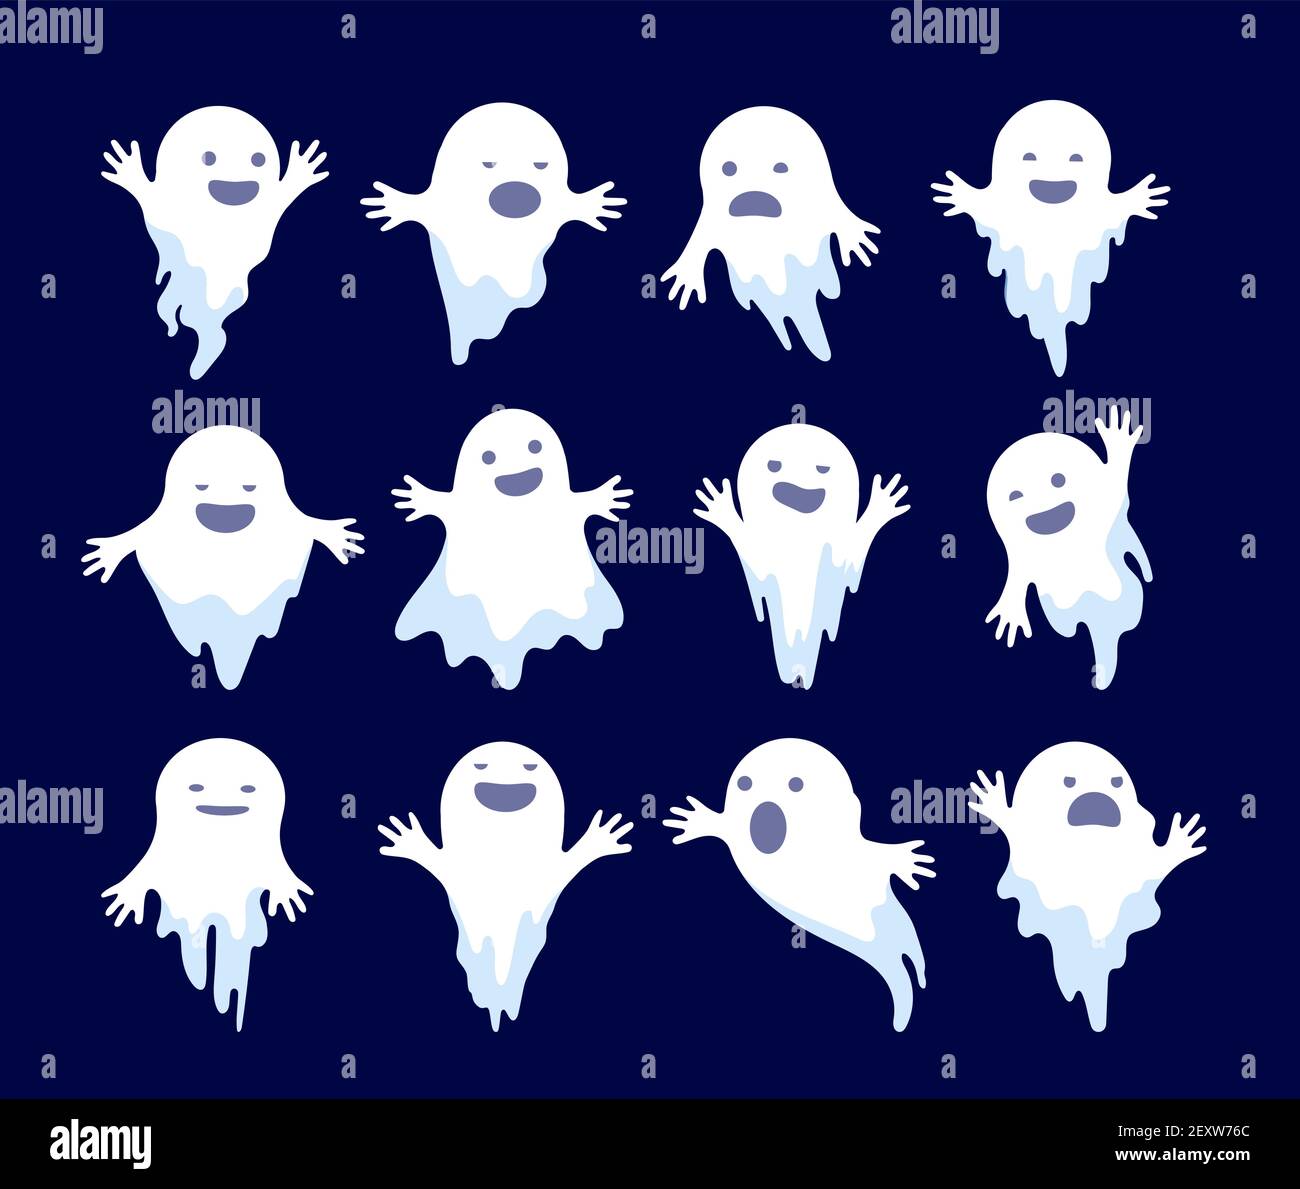 Fantasma. Fantasma fantasmal de Halloween, espíritus asustadizos. Misterio monstruos muertos dibujos animados vector personajes fantasmales. Ilustración fantasmal vacaciones, blanco fantasmal misterio ilustración Ilustración del Vector